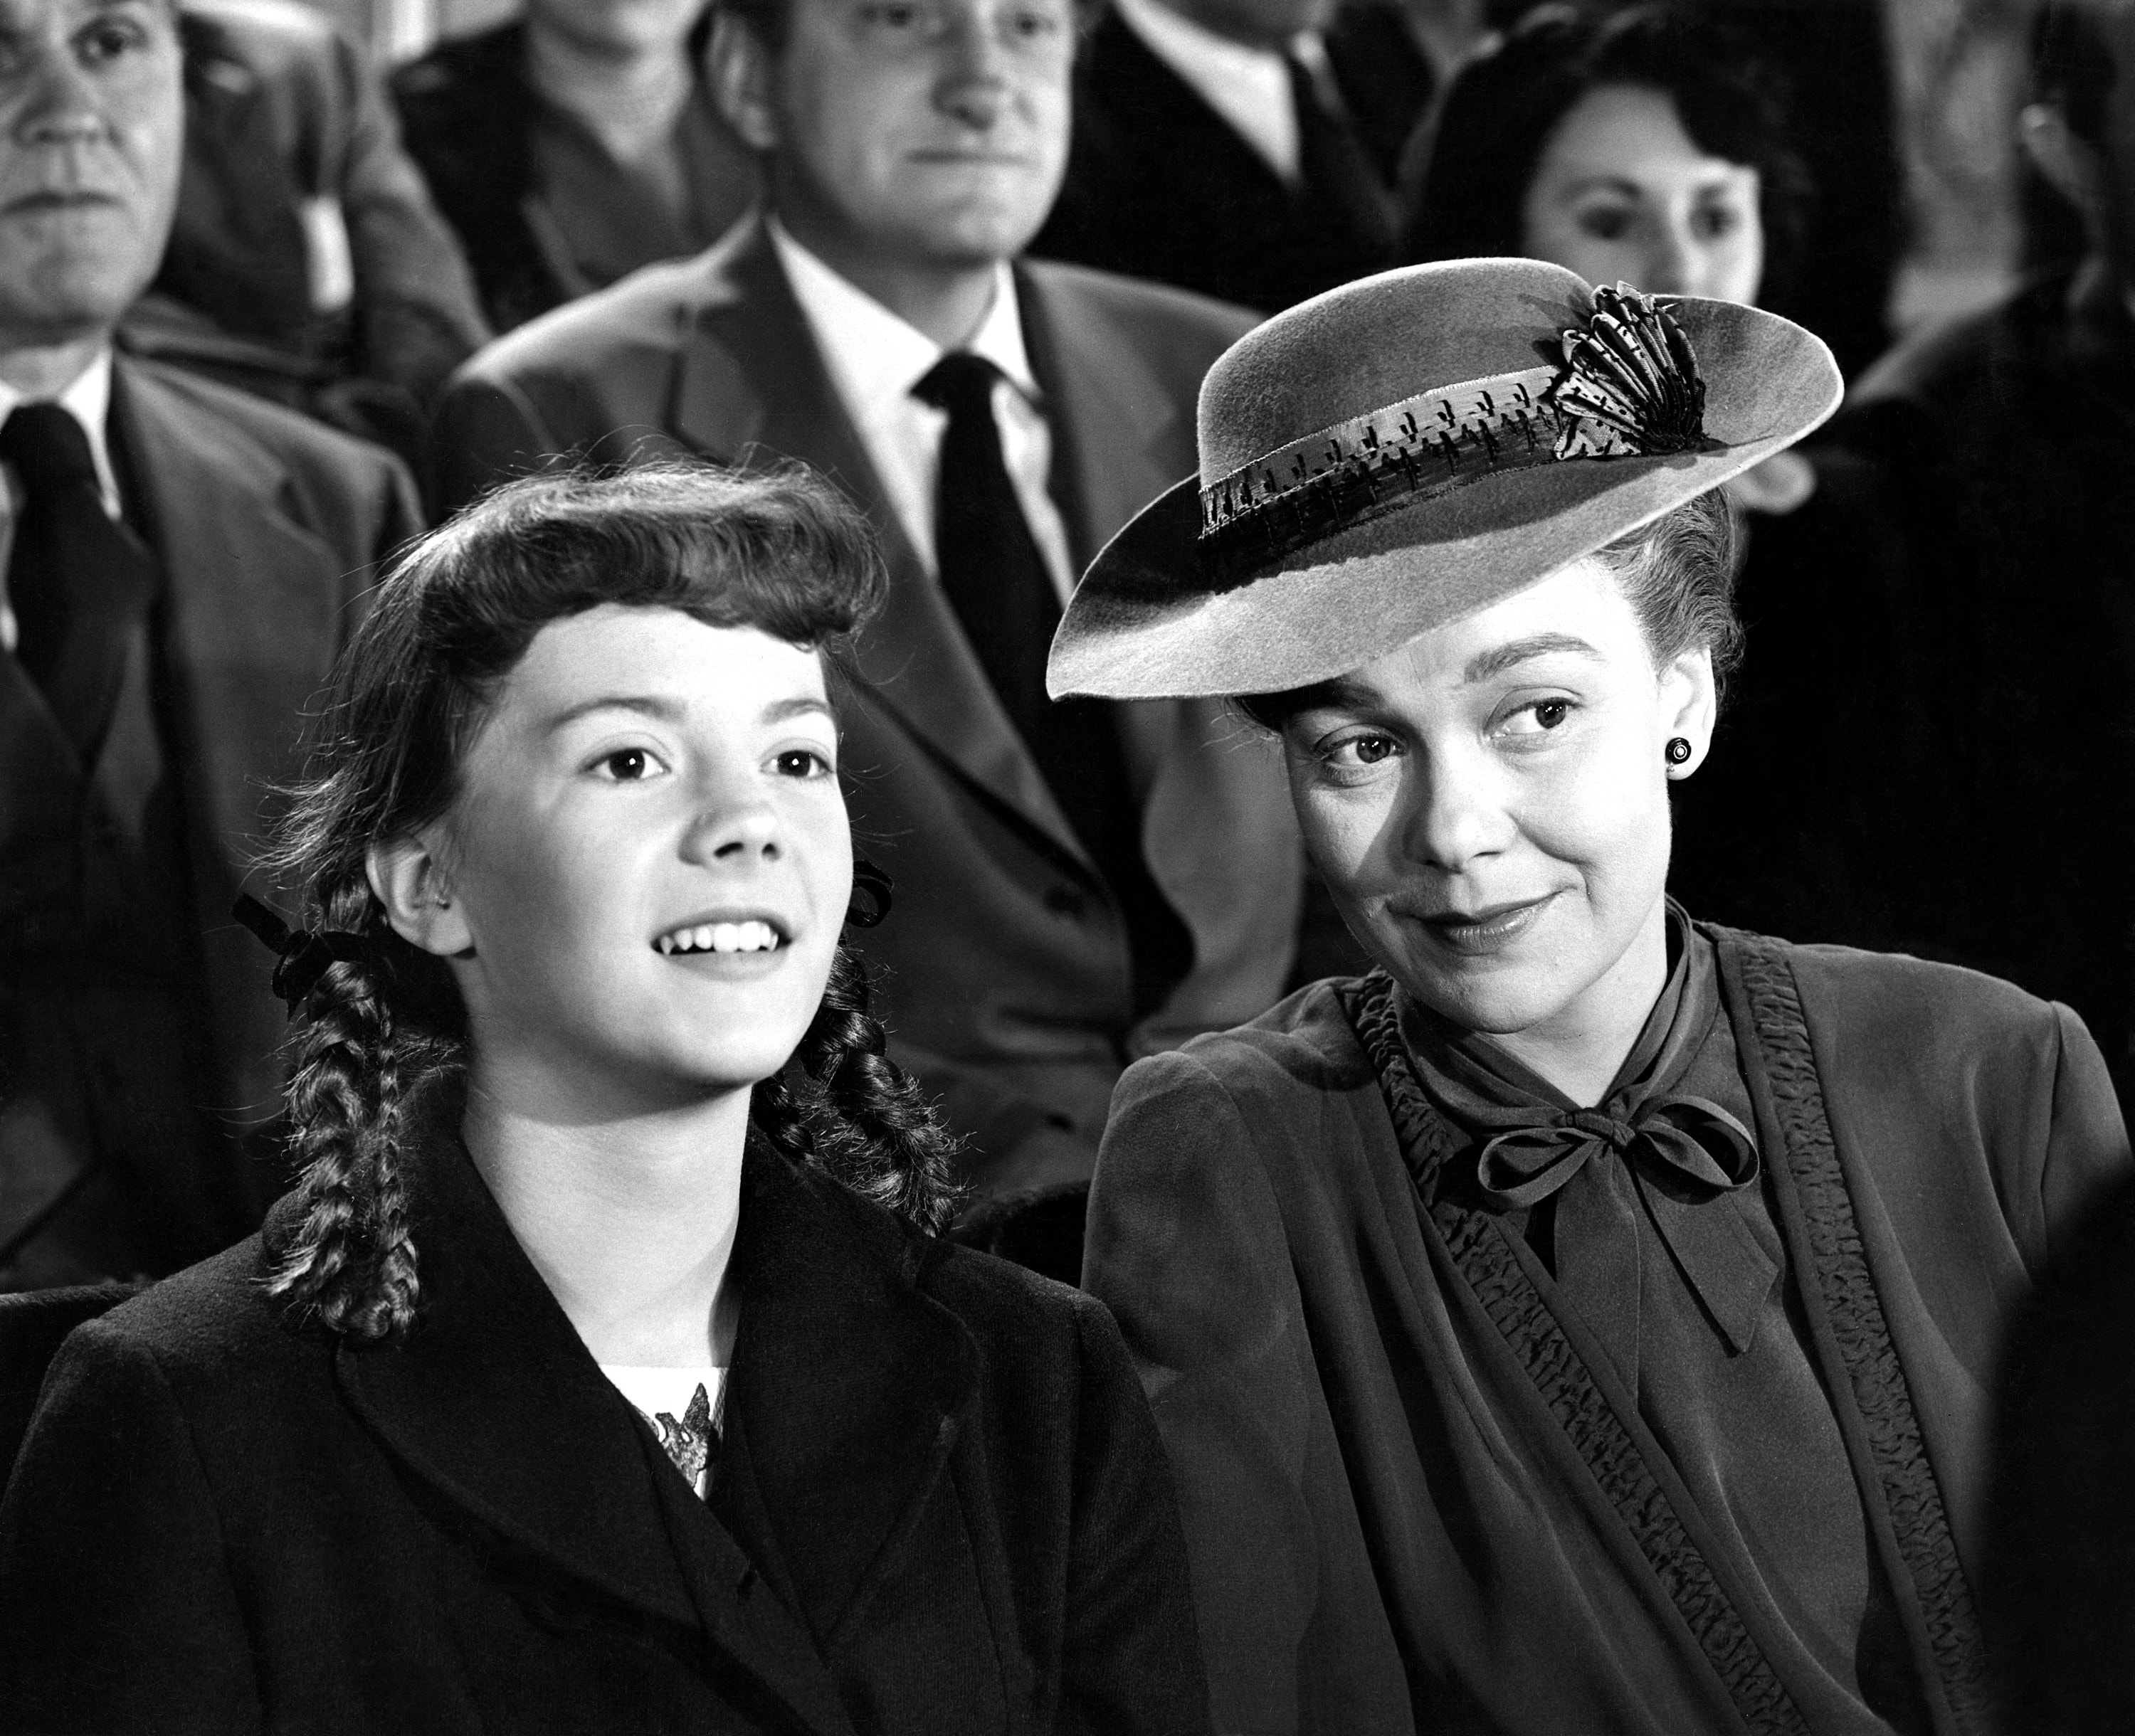 Natalie a 15 anni con l'attrice Jane Wyman nel 1951. Il film si intitola "Più forte dell'amore"